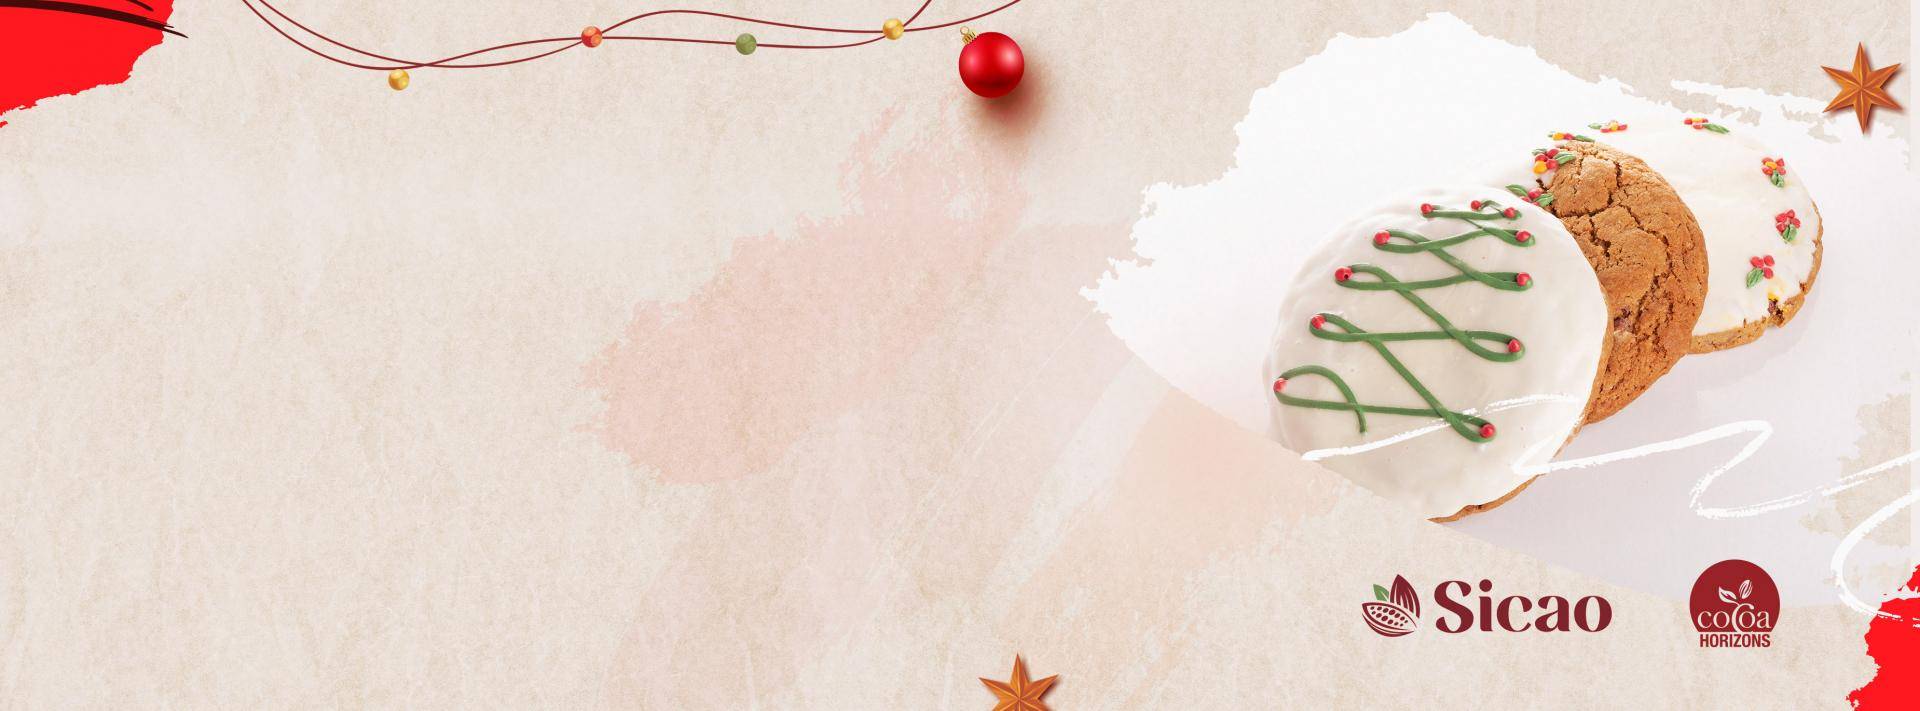 banner em tons claros de vermelho e, do lado direito, cookiets com cobertura branca e desenho de uma árvore de Natal